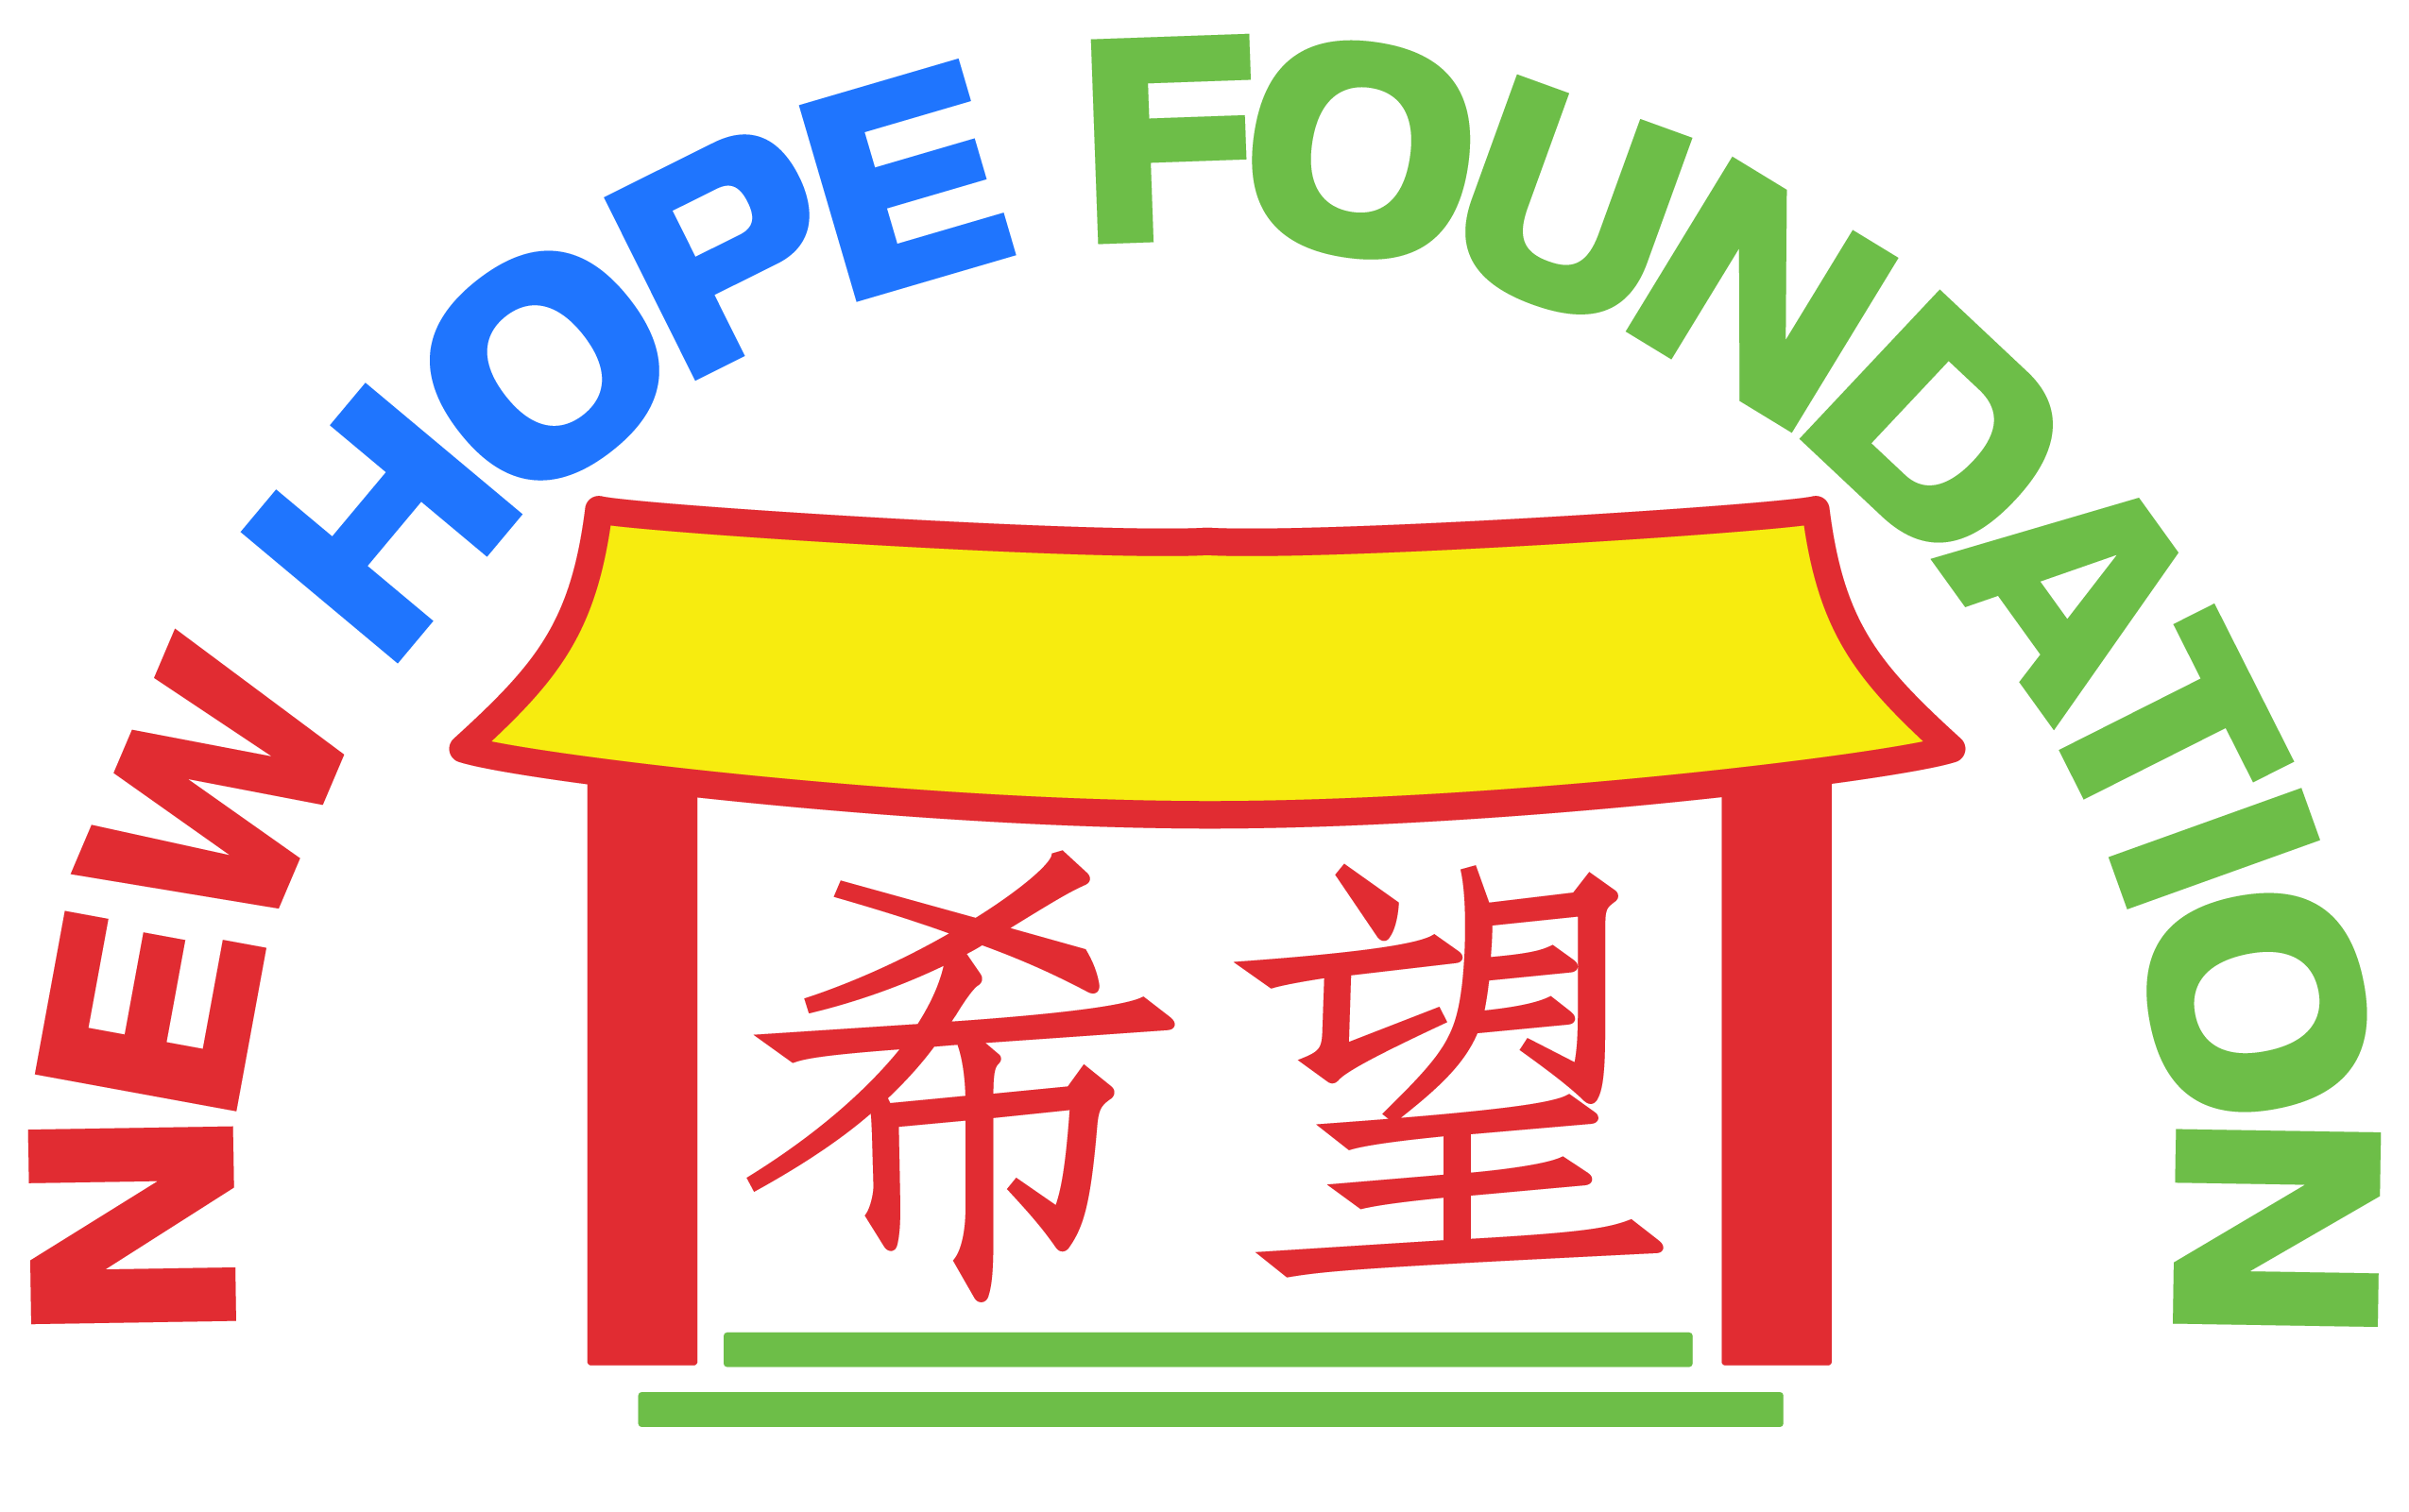 New Hope Foundation